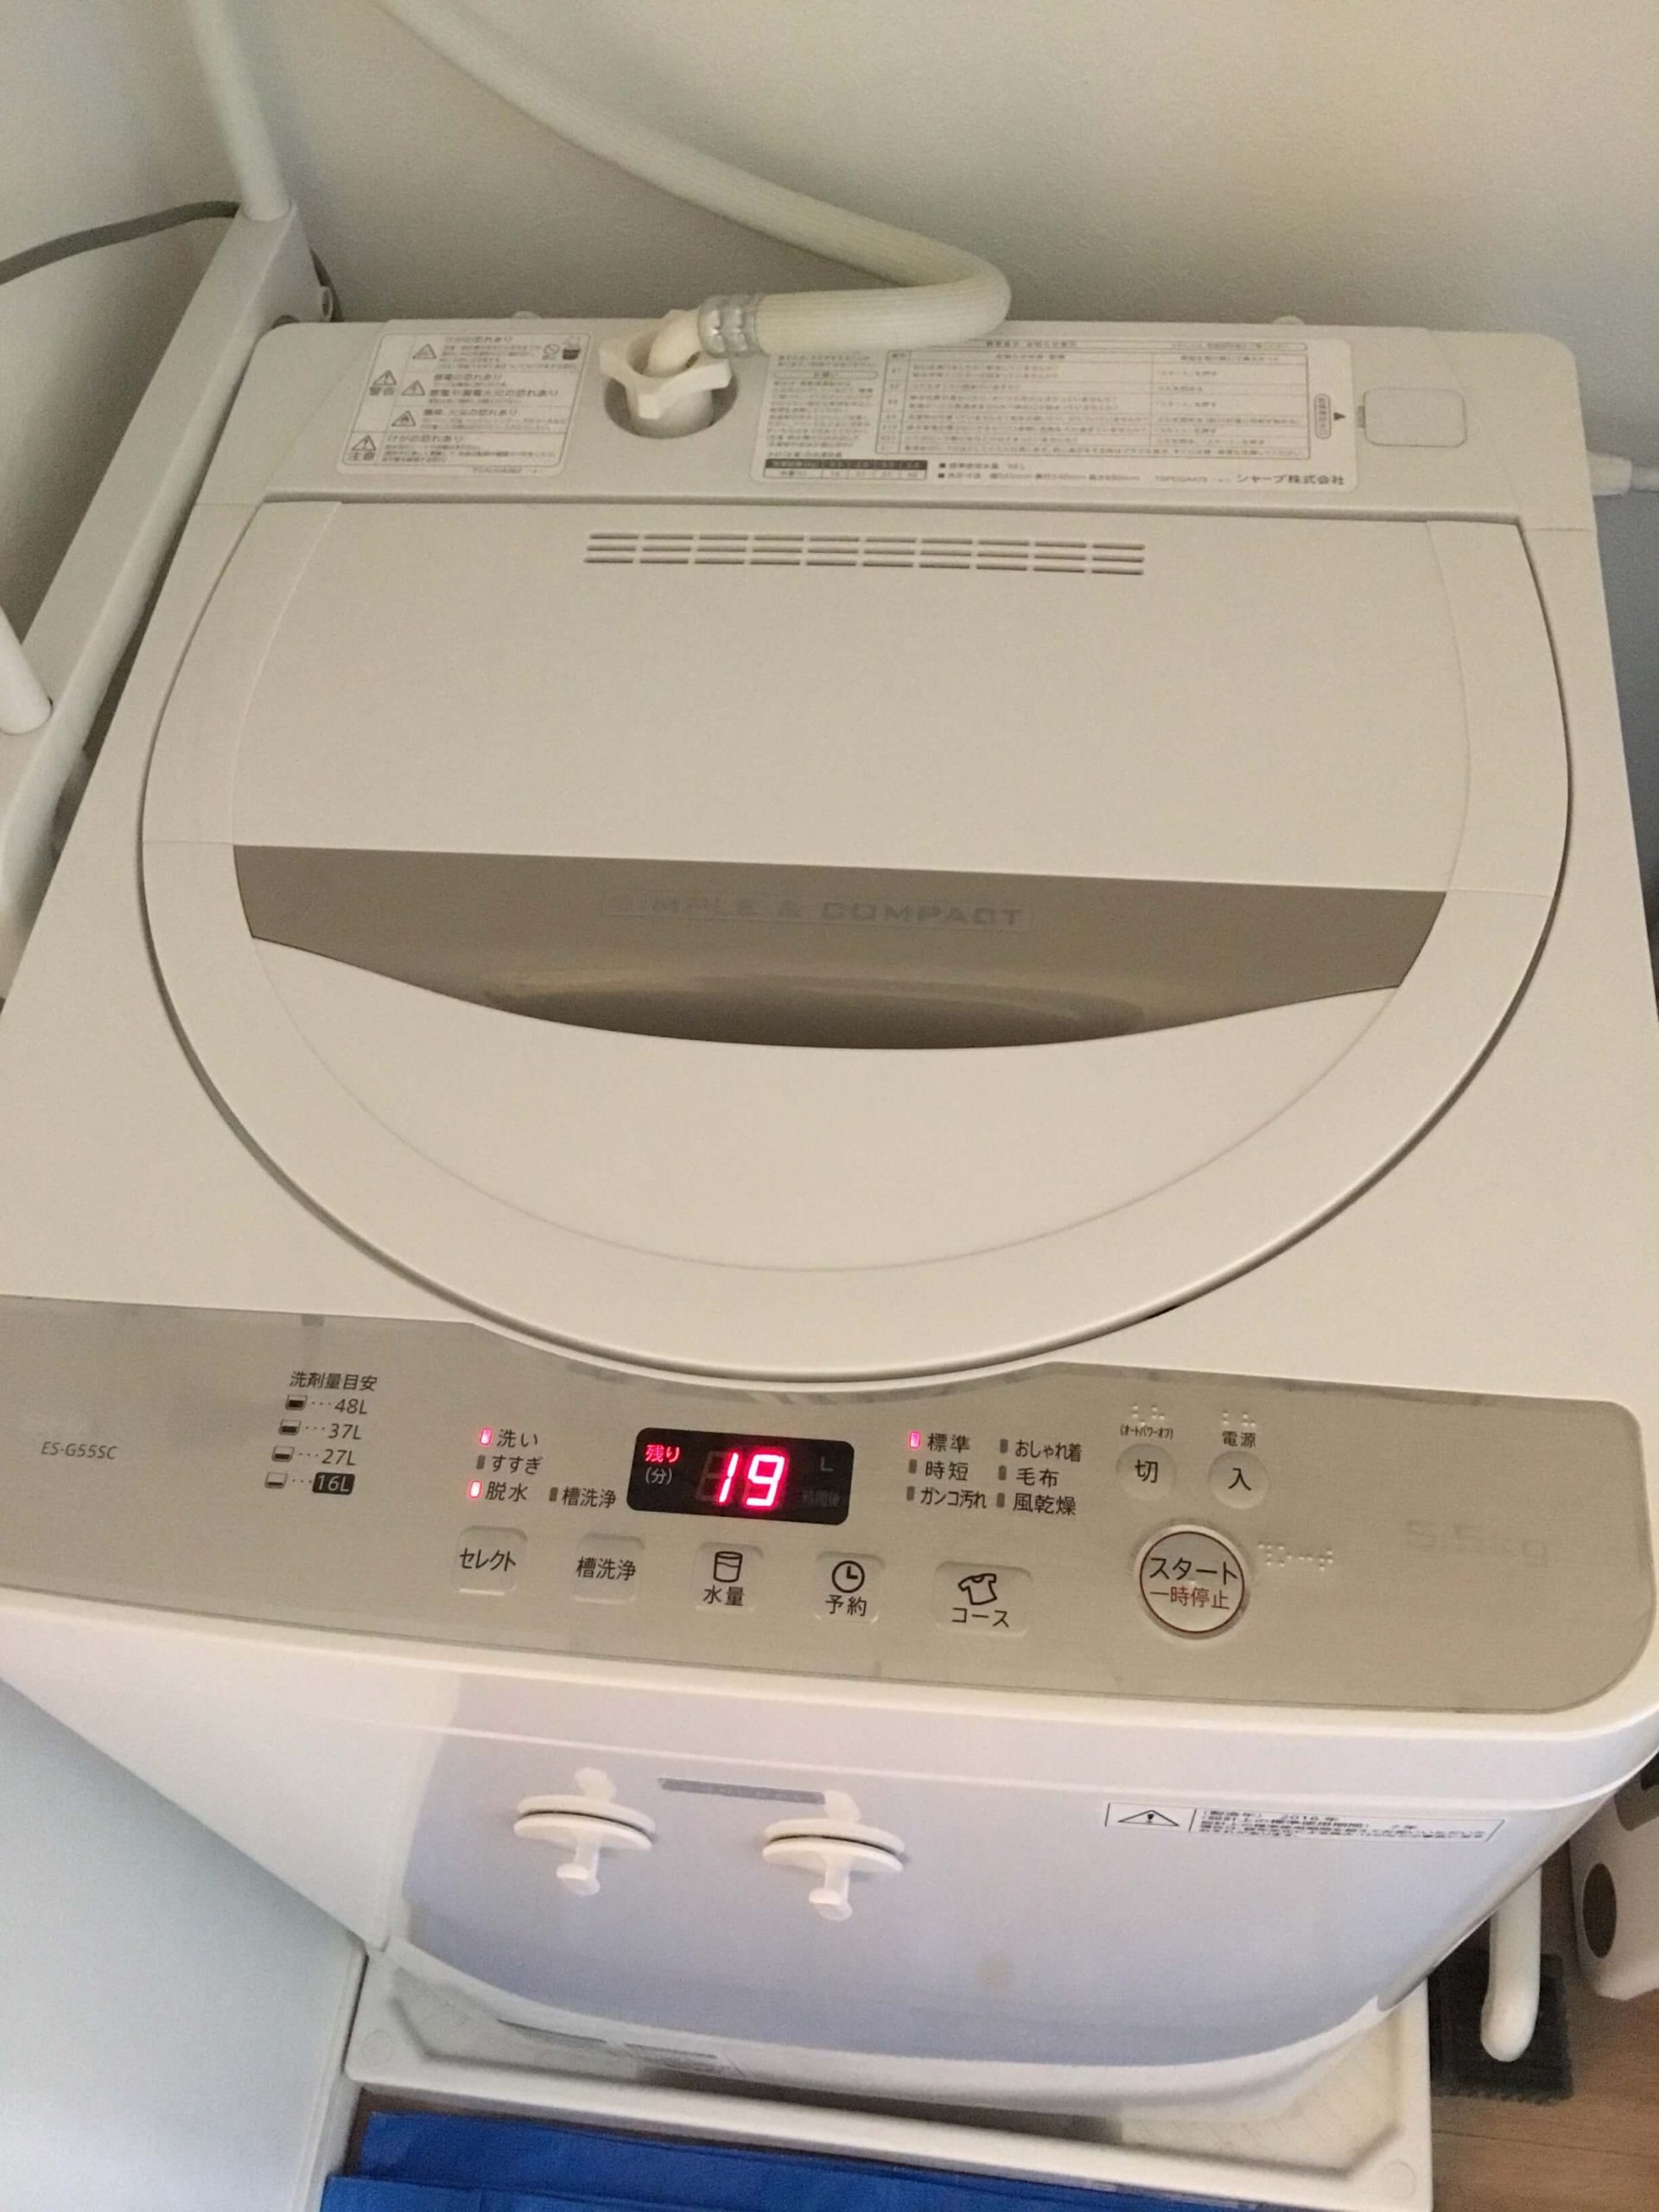 シャープ製洗濯機 ES-G55SCの分解クリーニング